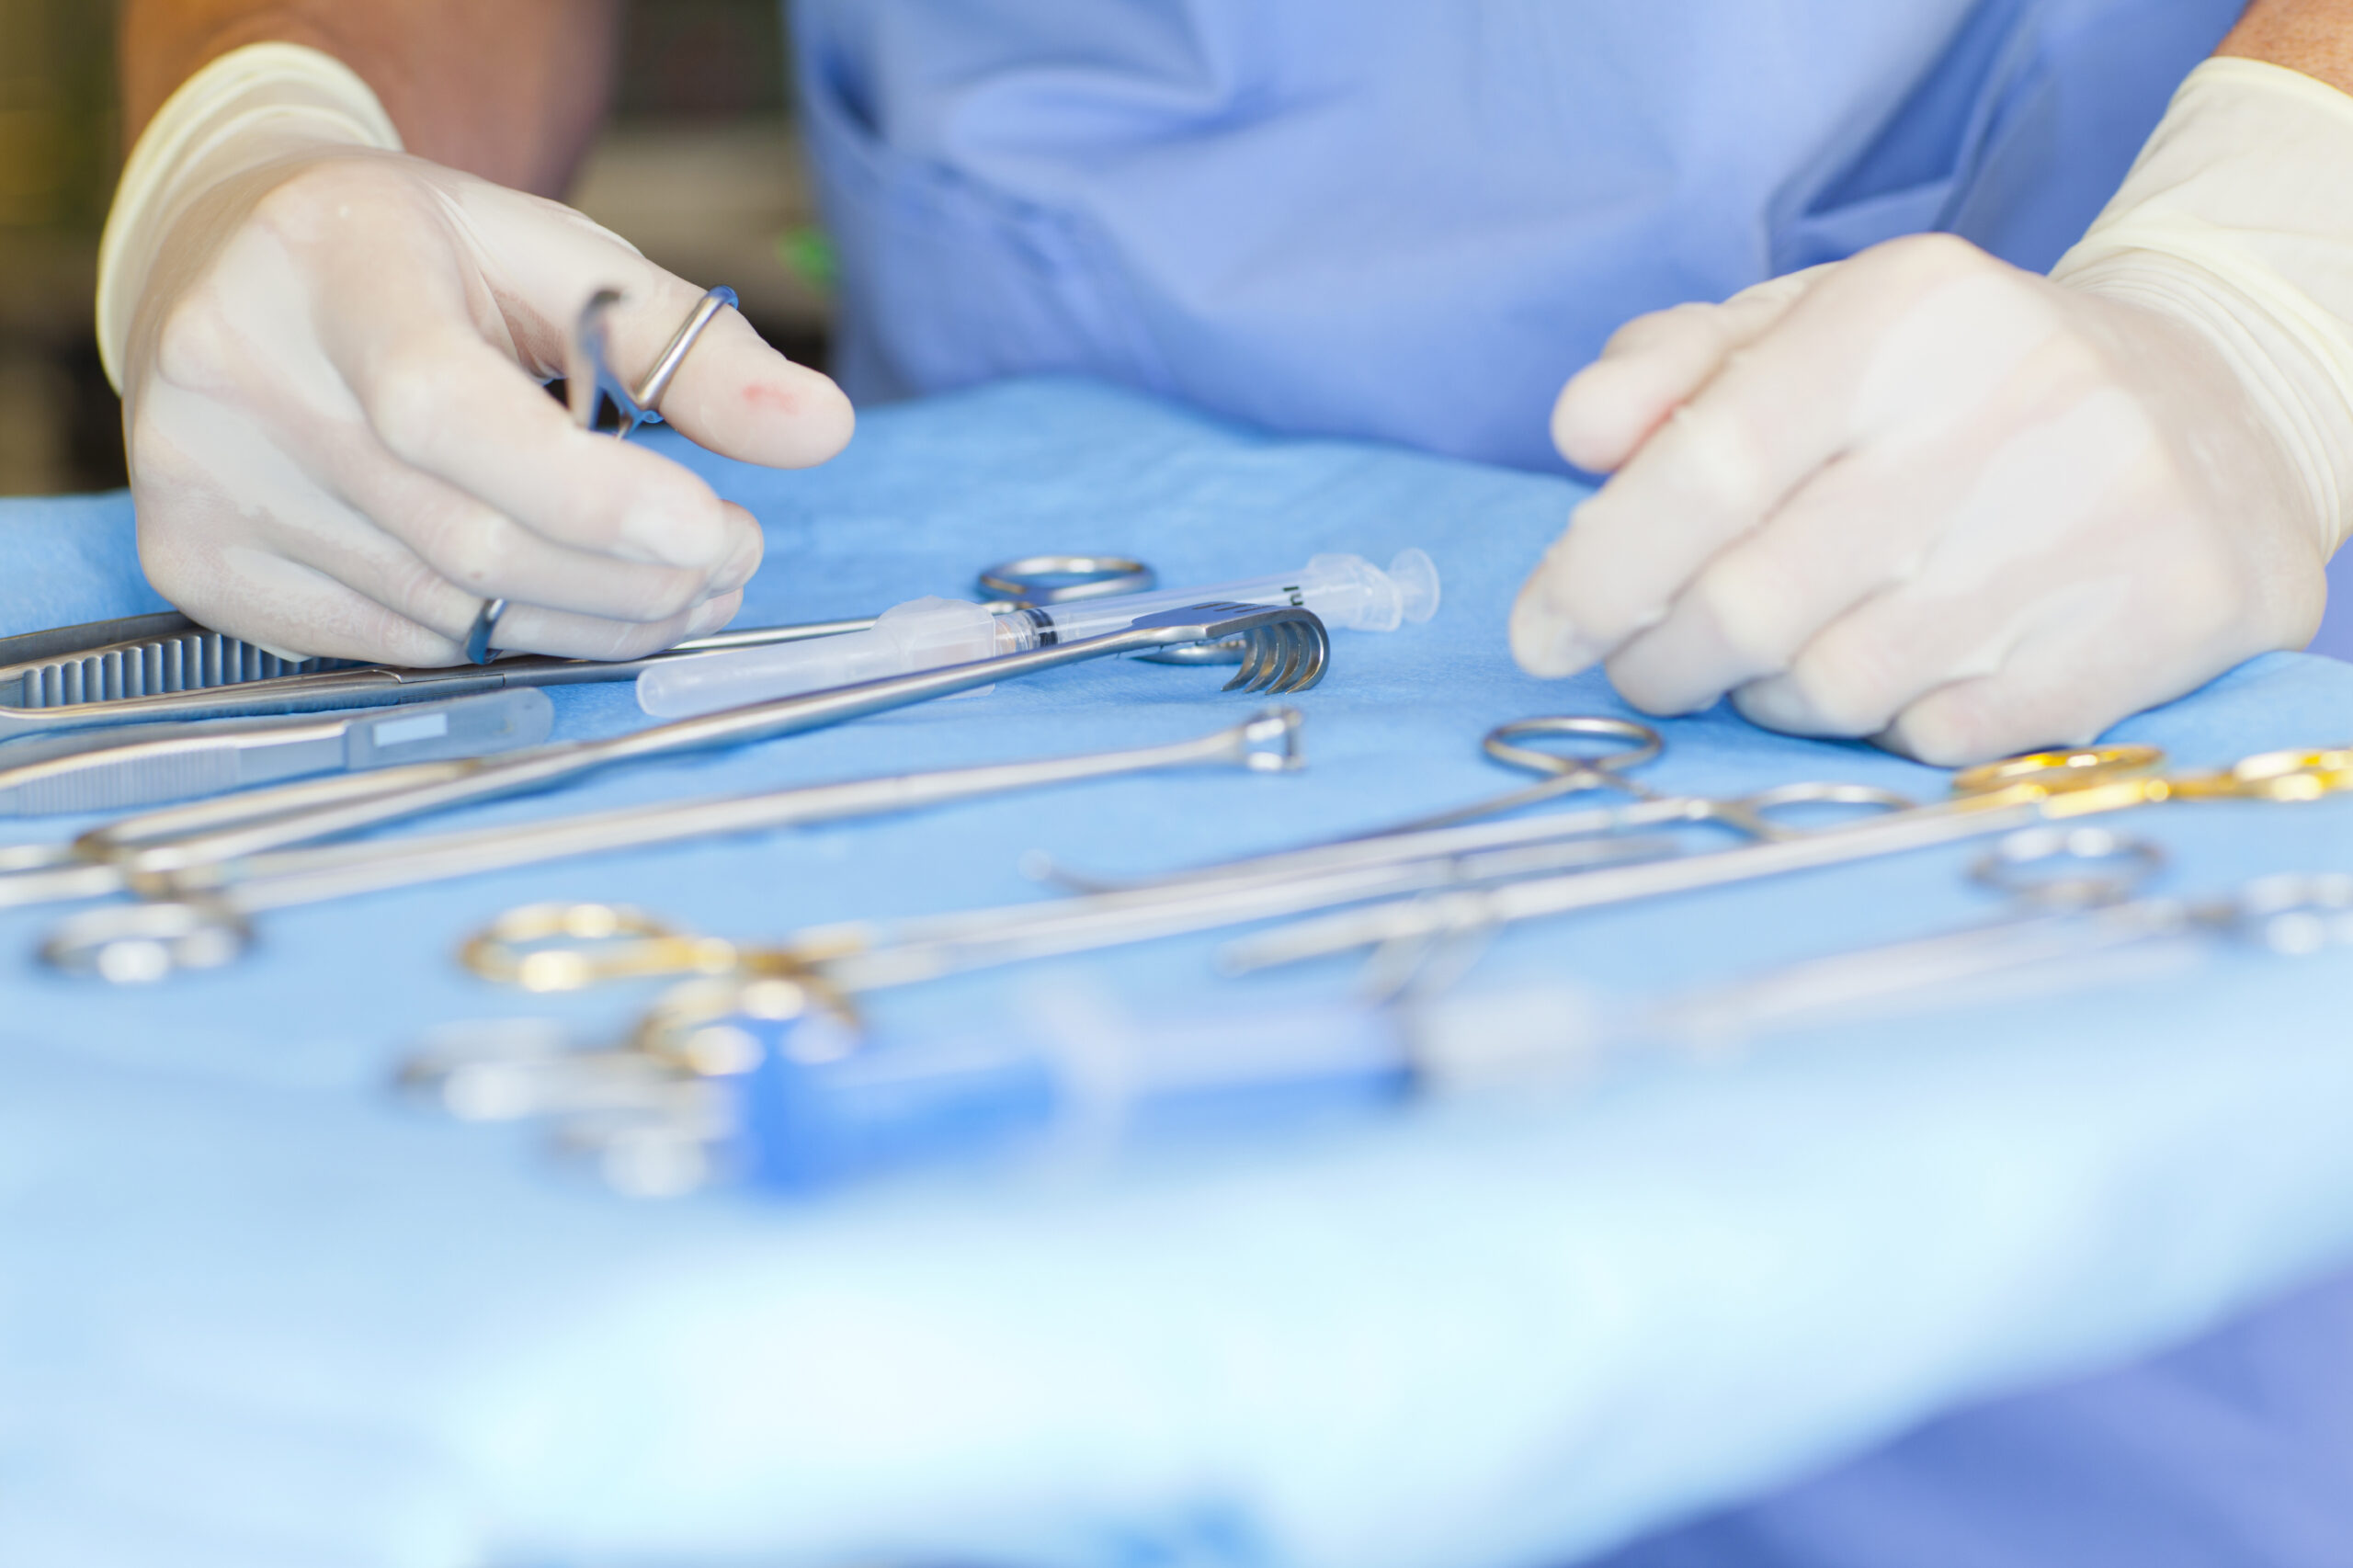 instrumentos cirúrgicos sobre a mesa de cirurgia